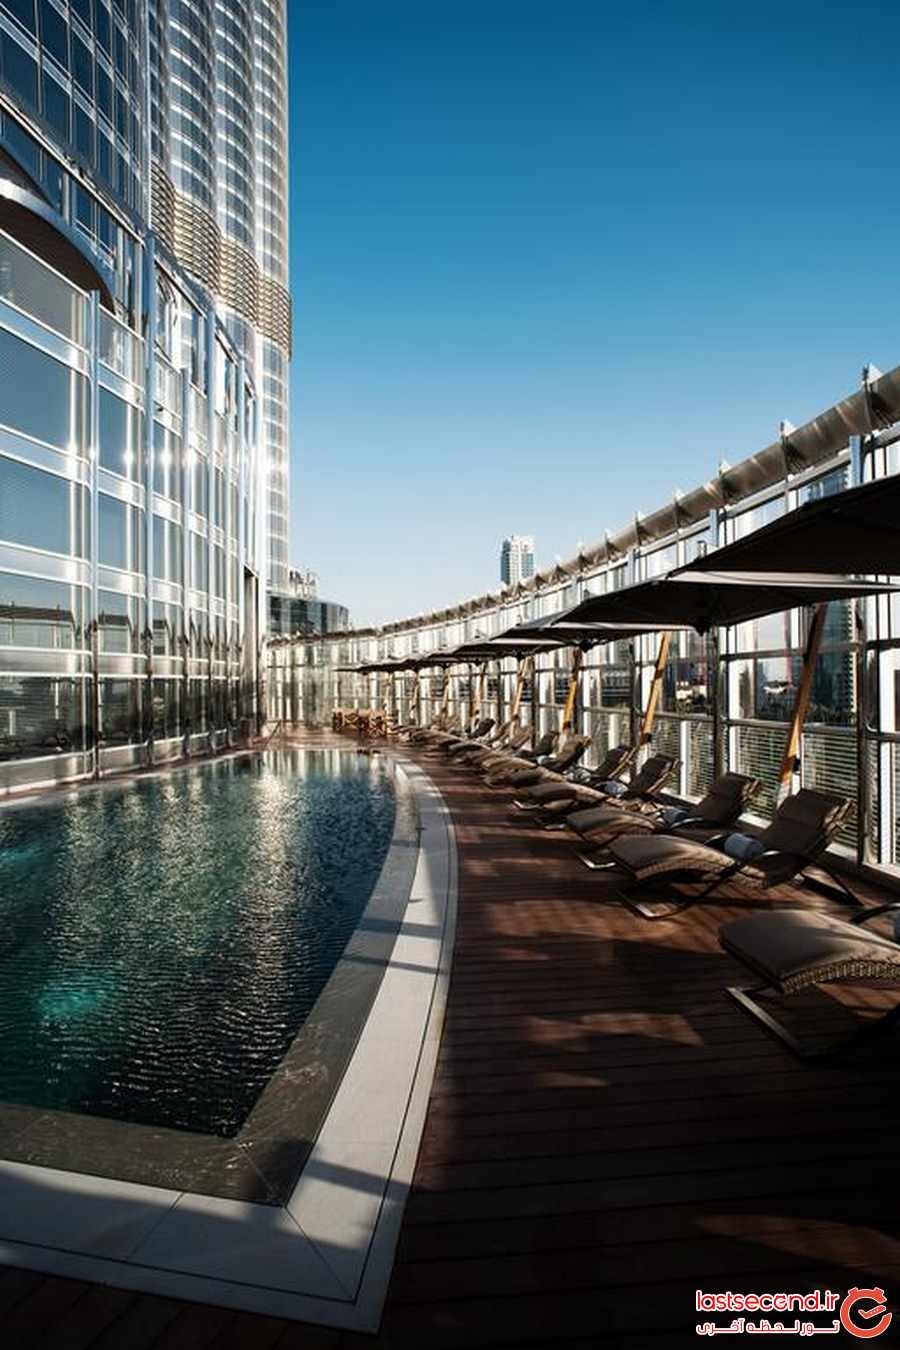 هتل آرمانی دبی (‏Armani Dubai ‎‏ ) ، اقامتگاهی شیک و رویایی در قلب برج خلیفه دبی‏